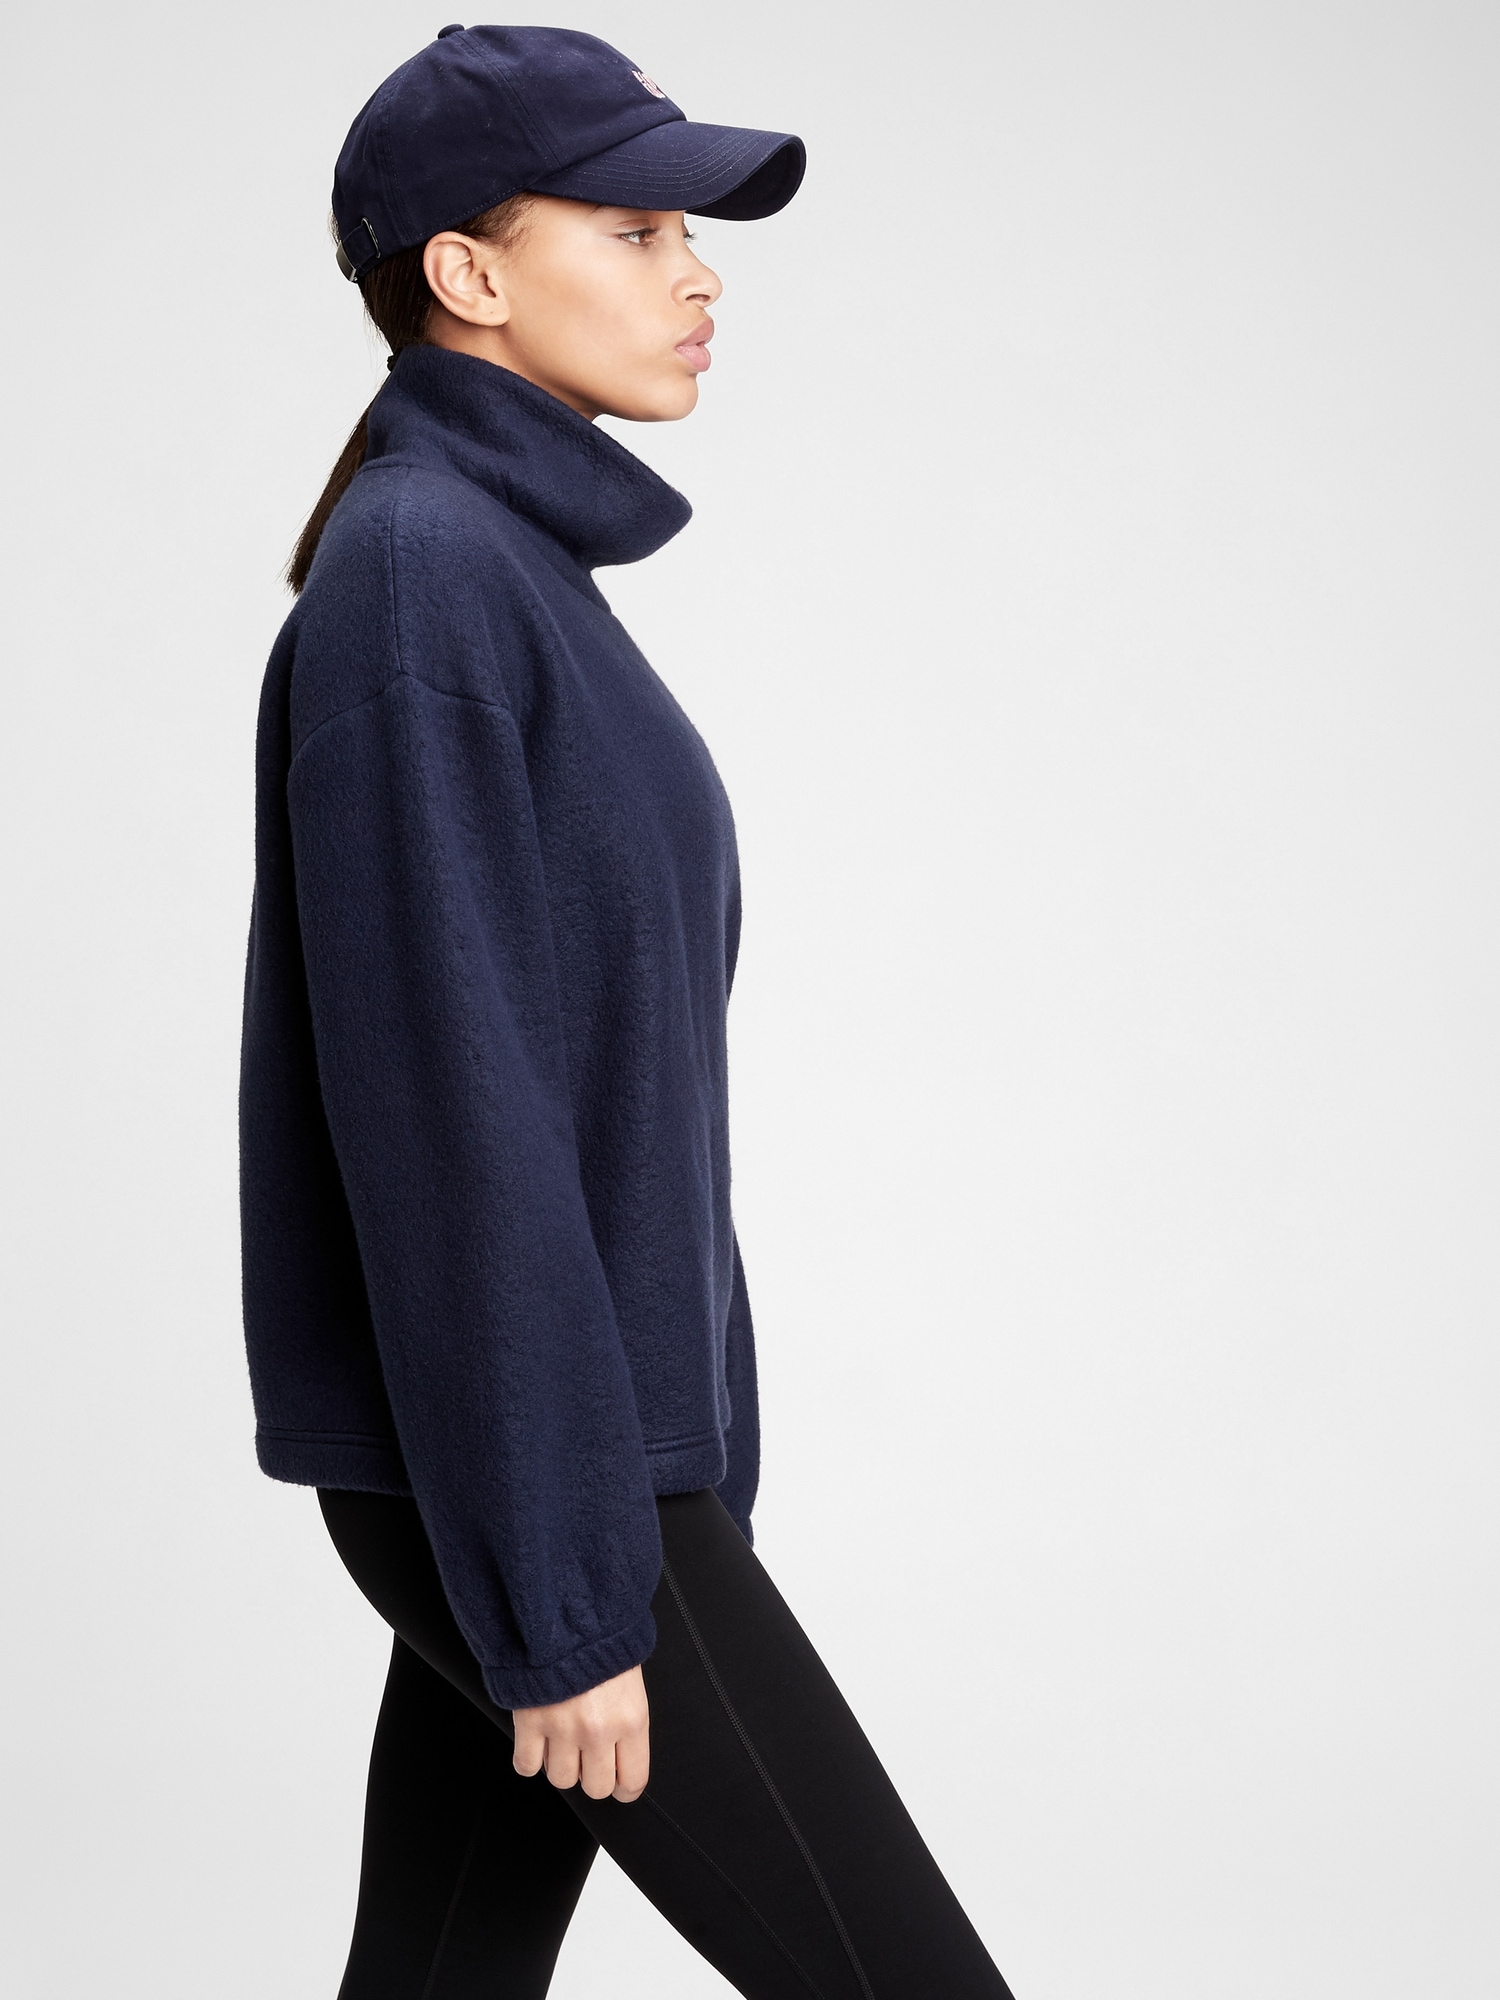 Fleece Turtleneck Sweatshirt | Gap